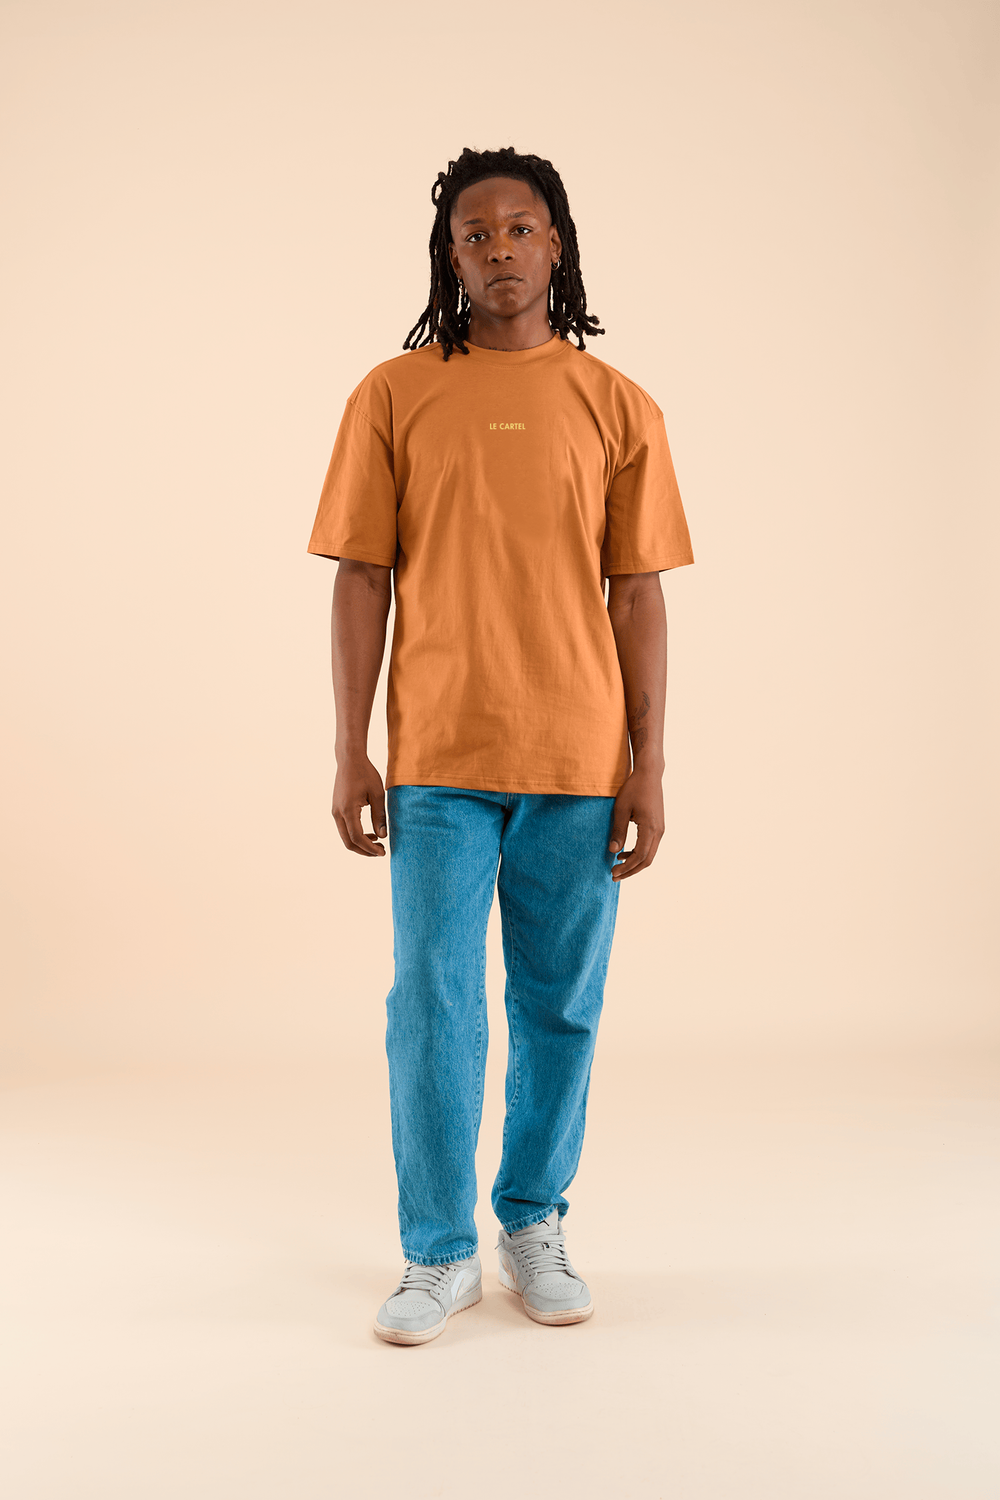 JOUR DE FÊTE・T-shirt unisexe・Orange